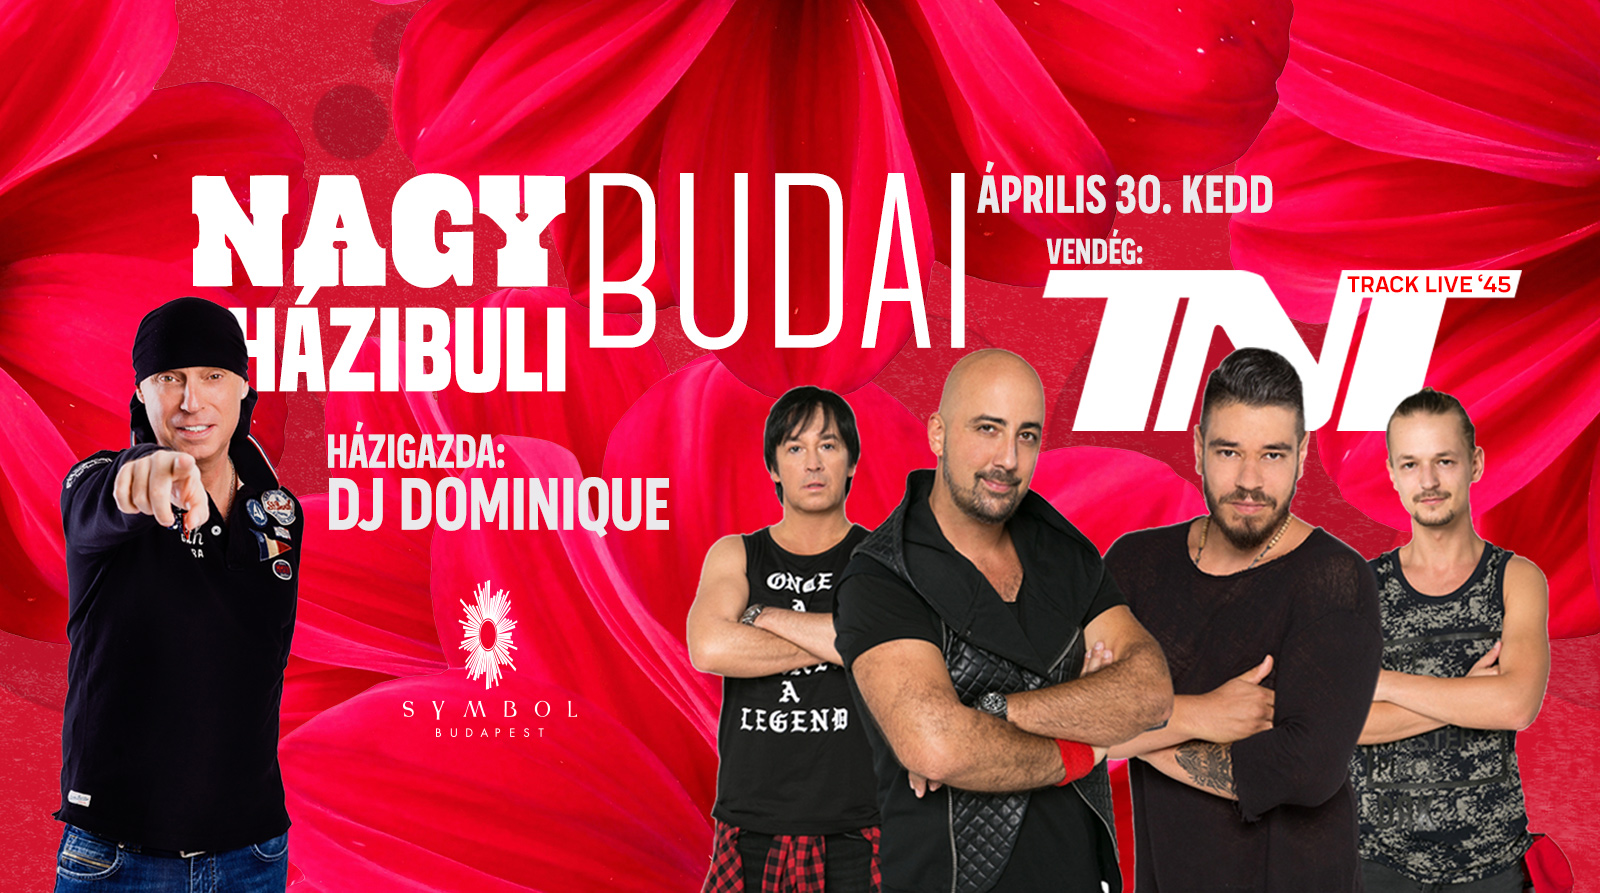 Nagy Budai Házibuli - DJ Dominique & TNT